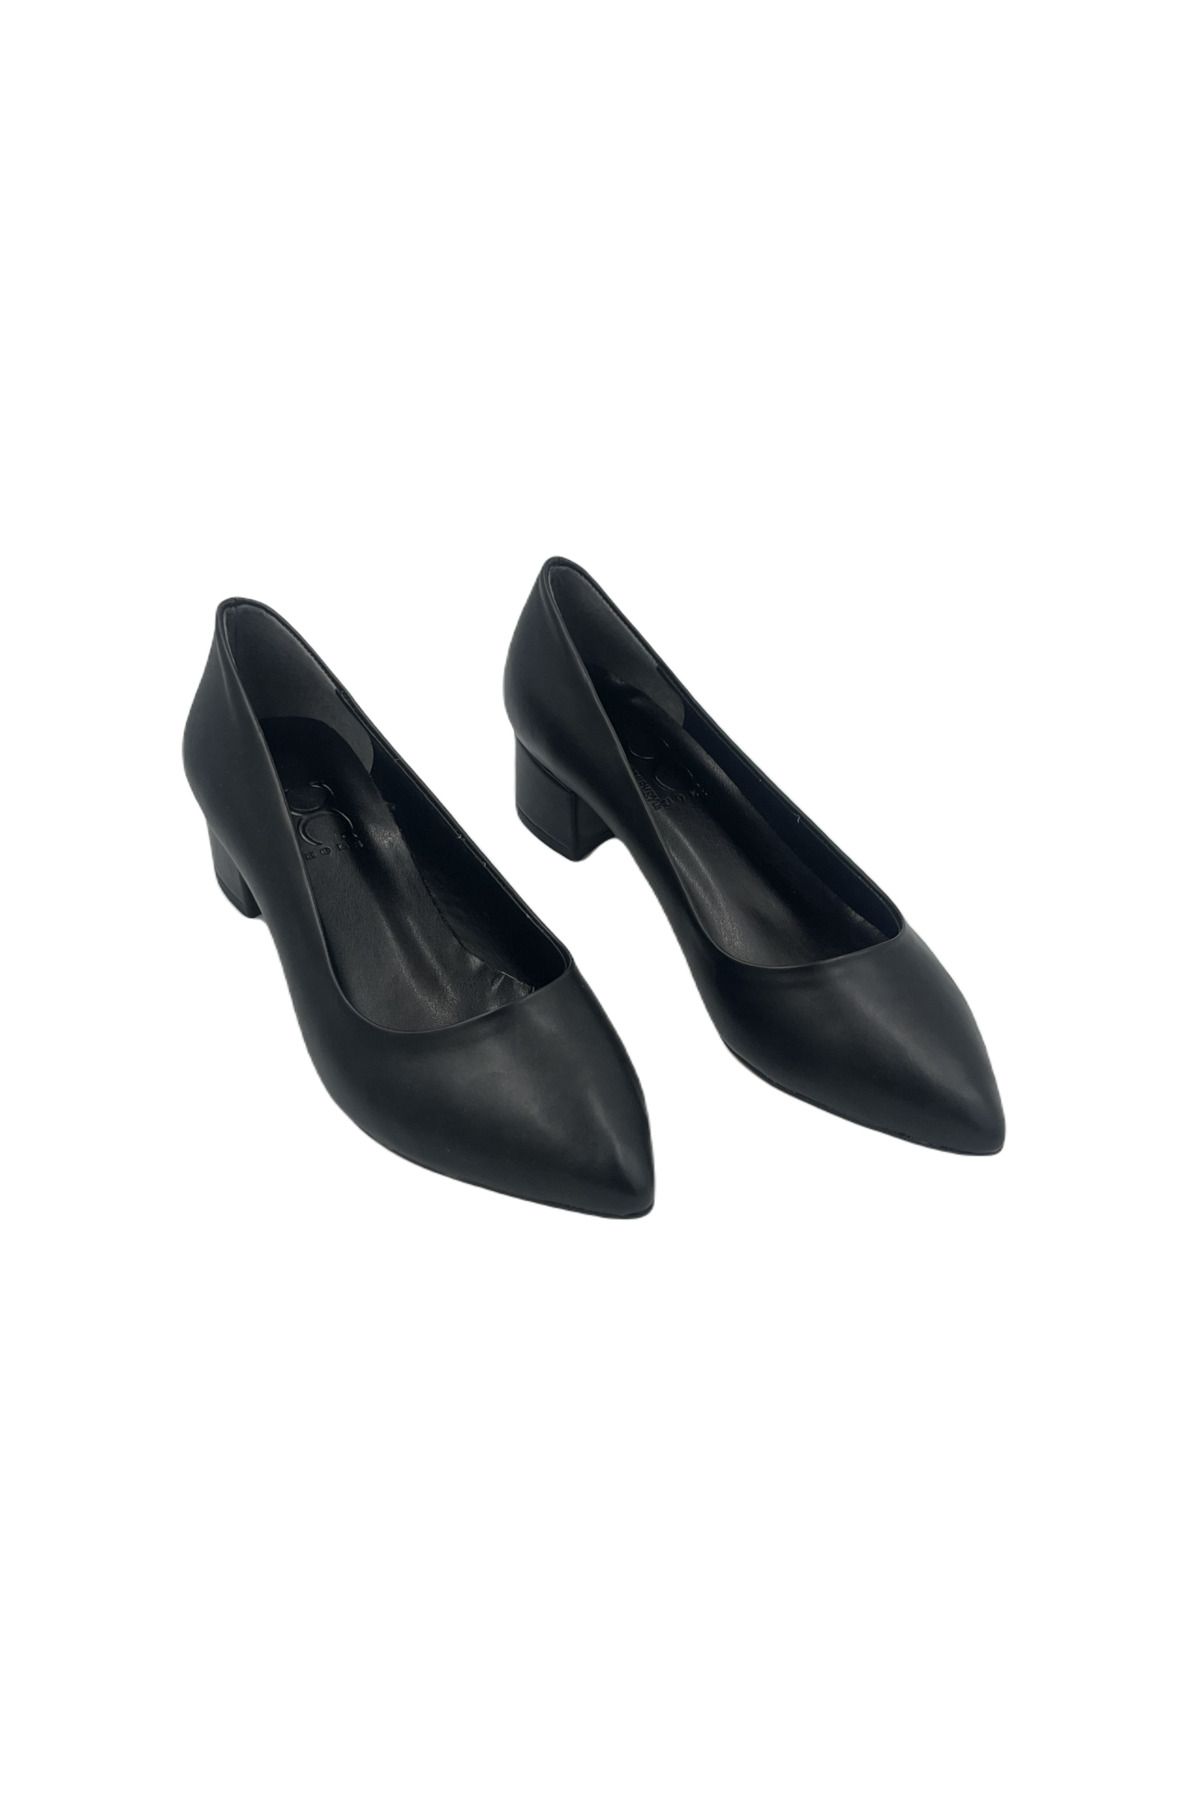 ERENİM Siyah Kısa Topuk Kadın Klasik Ayakkabı